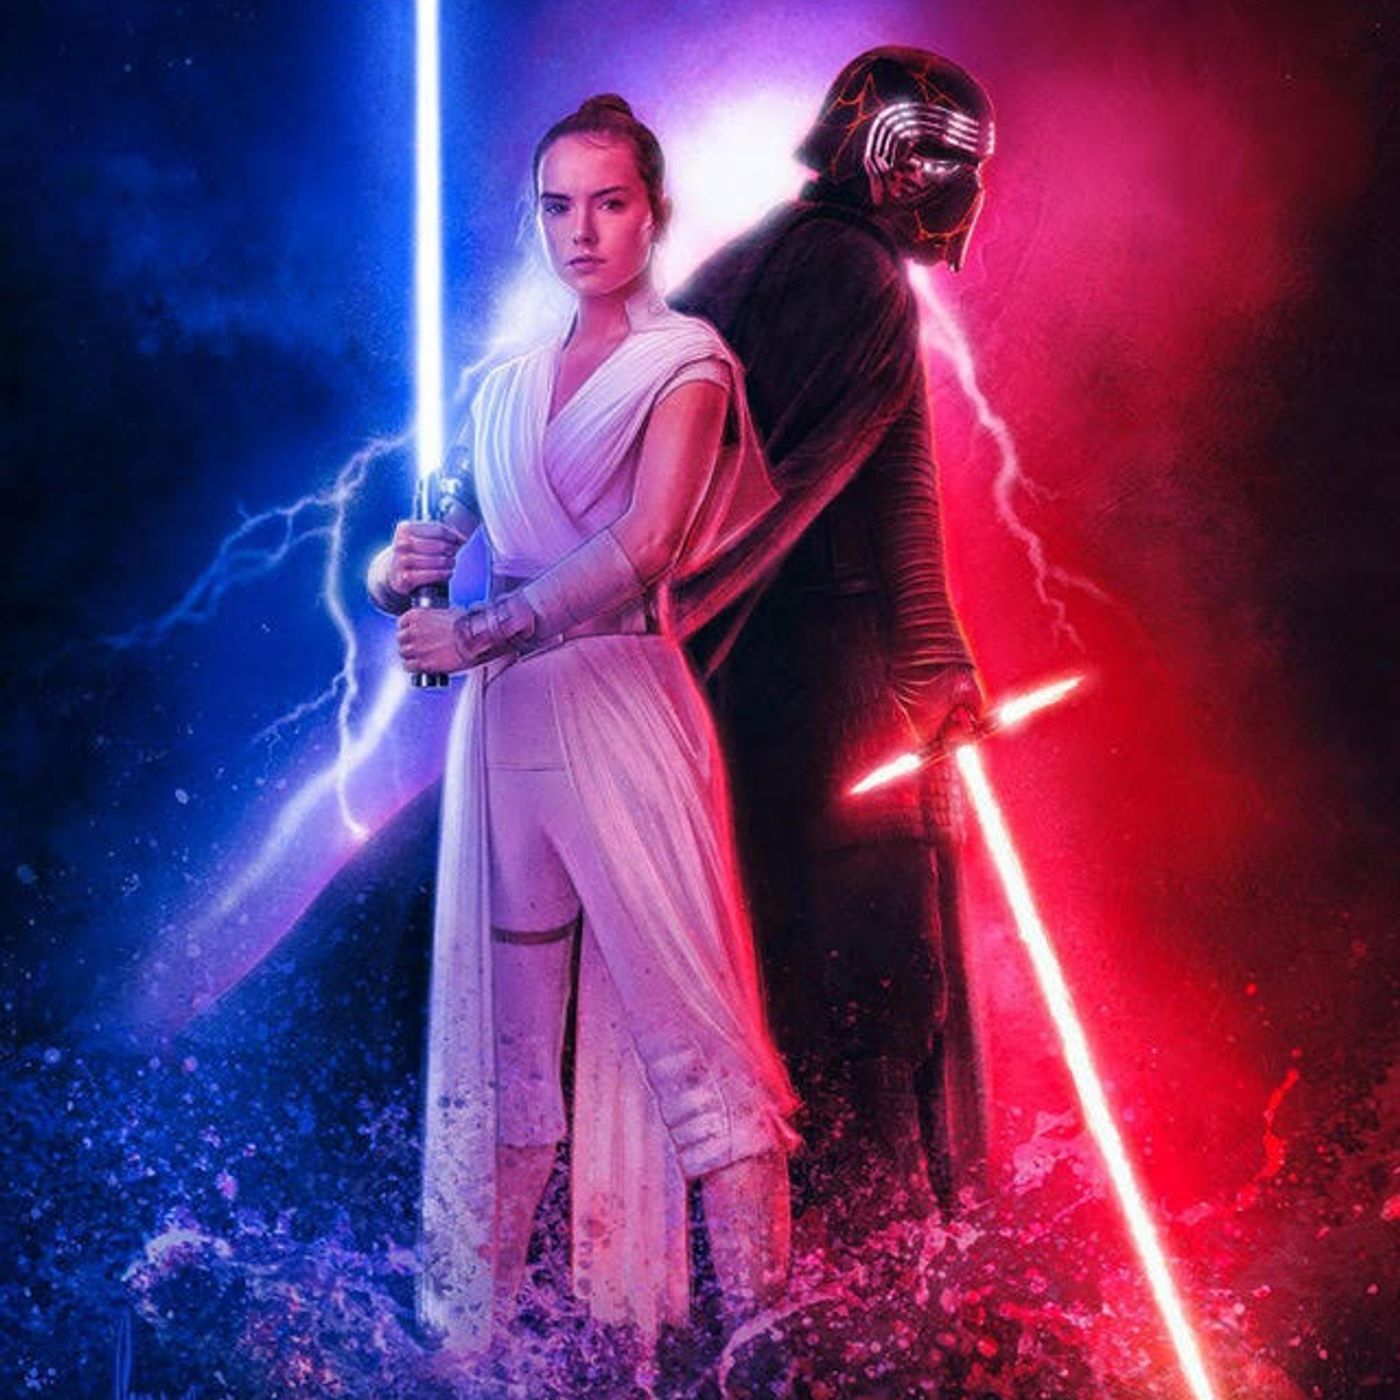 Rey Movie Updates. Star Wars is still awesome!